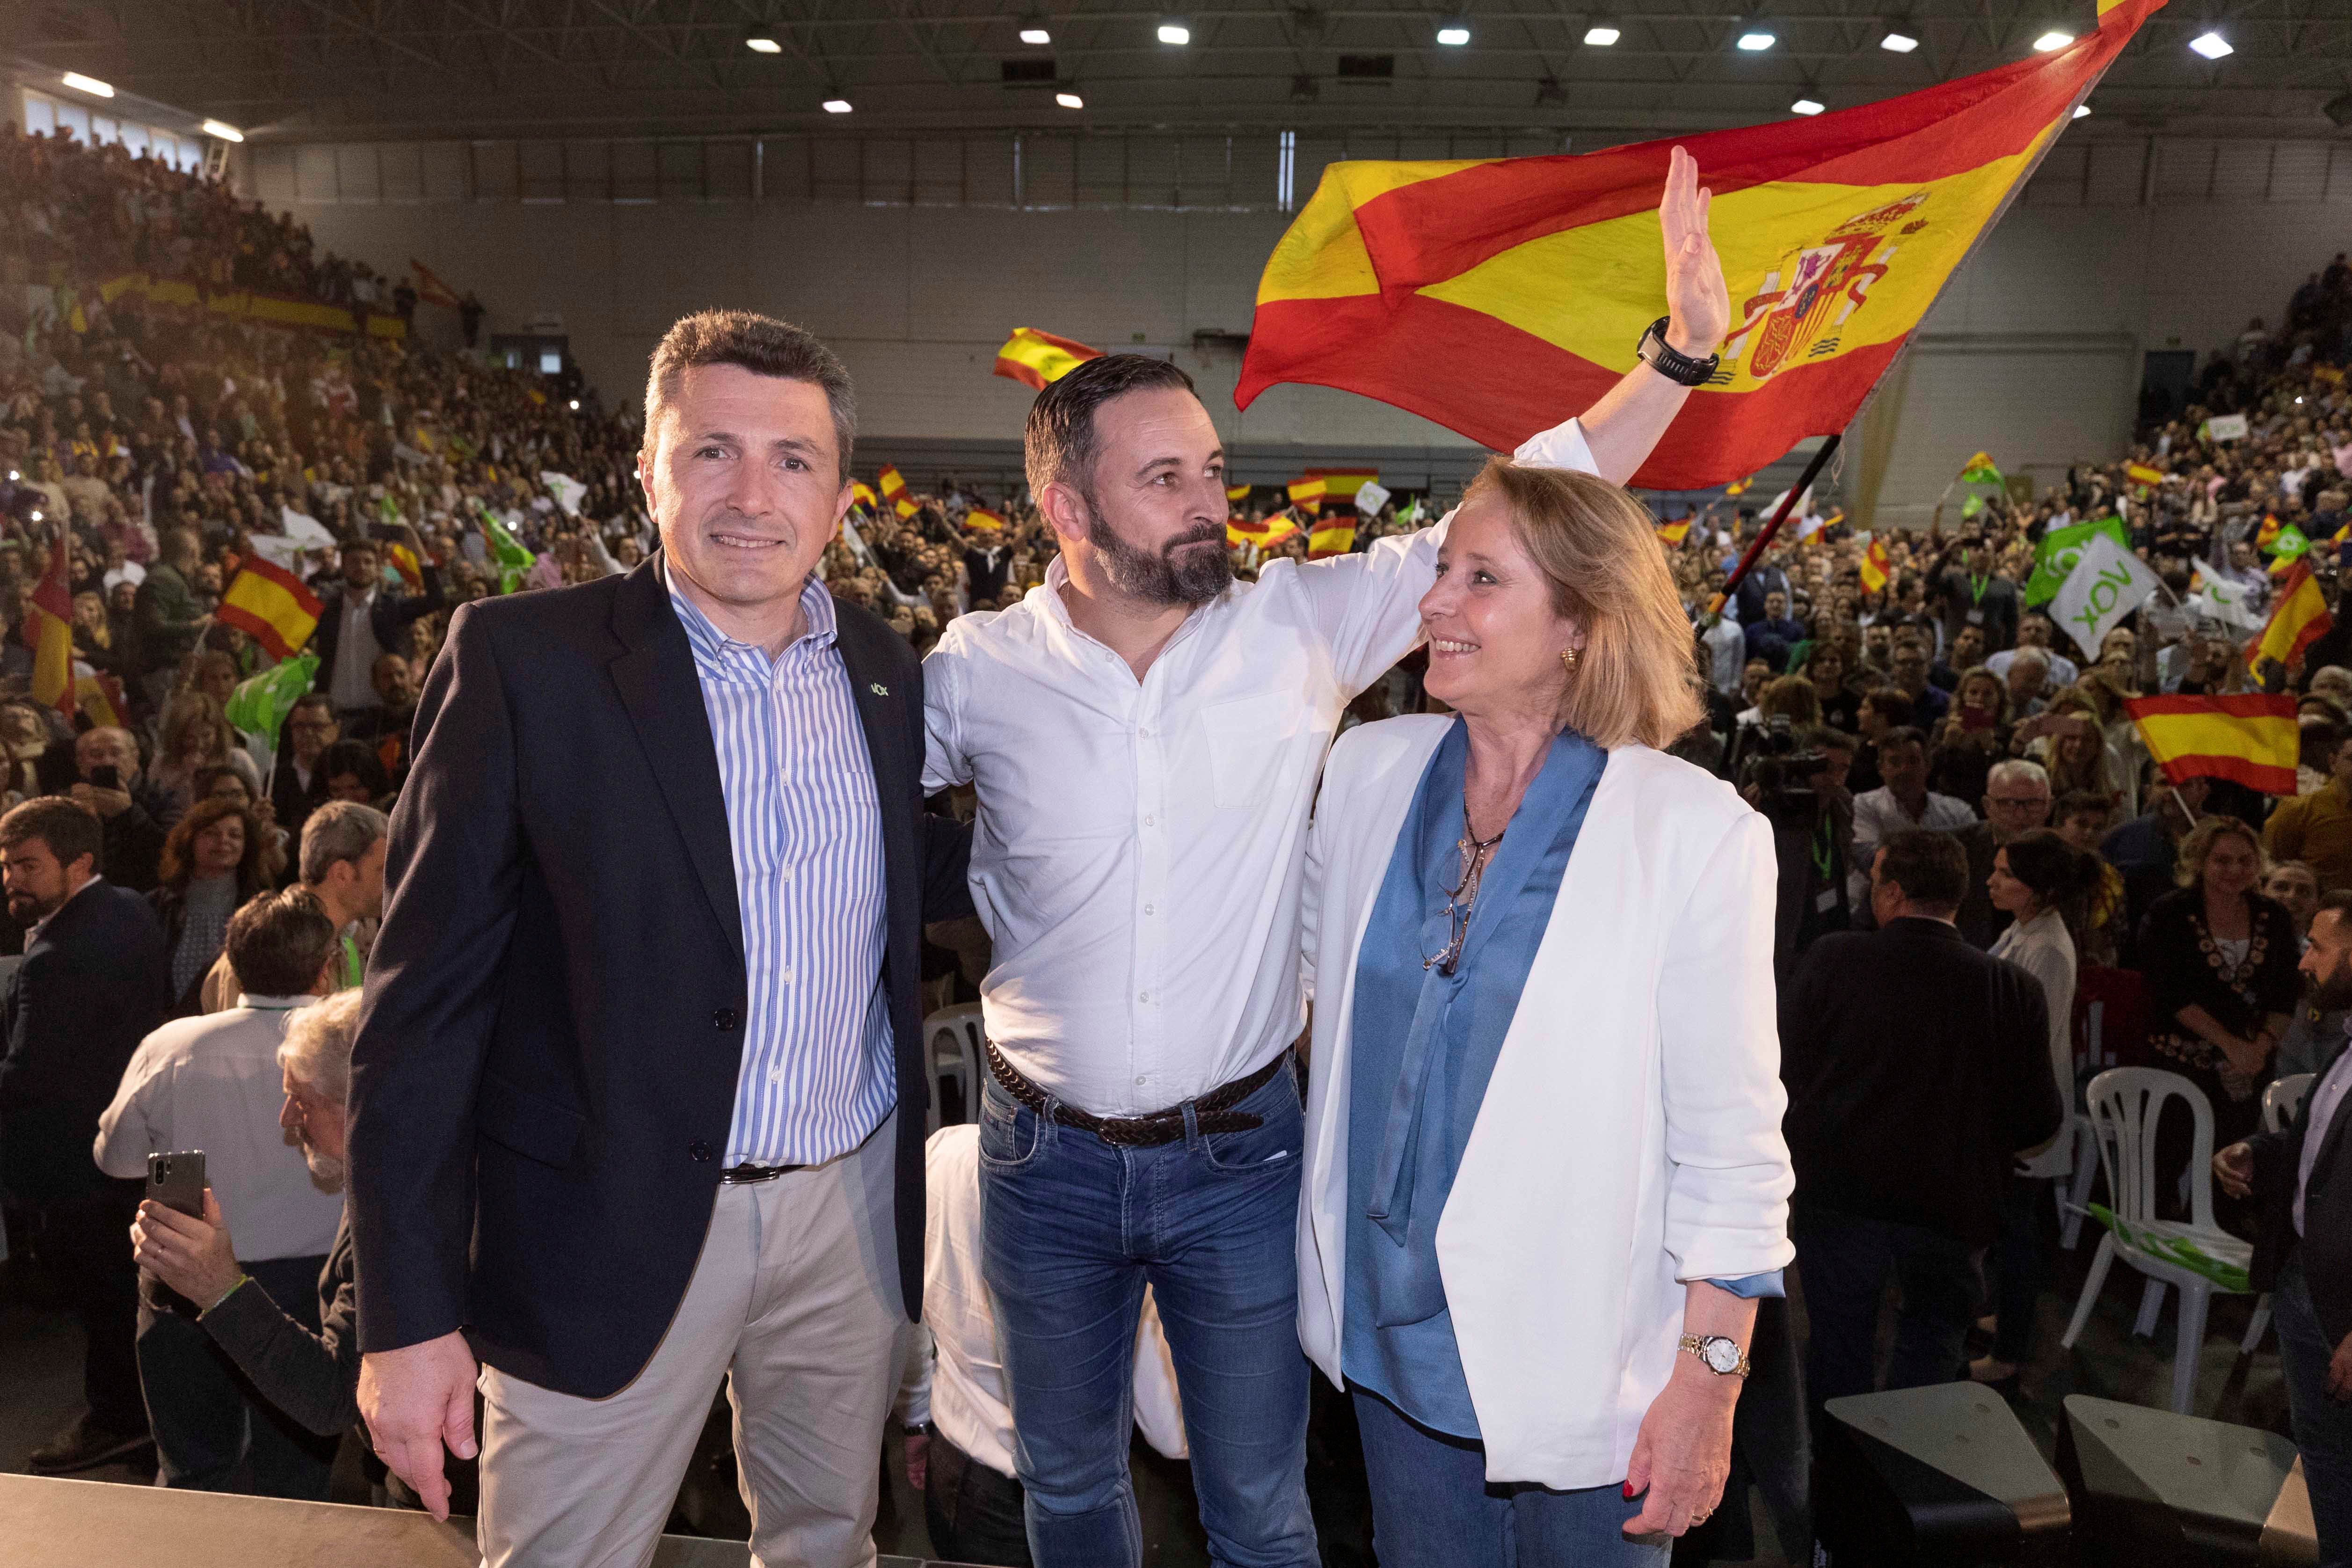 Dimite en bloque la ejecutiva de Vox Murcia por "exceso de trabajo"